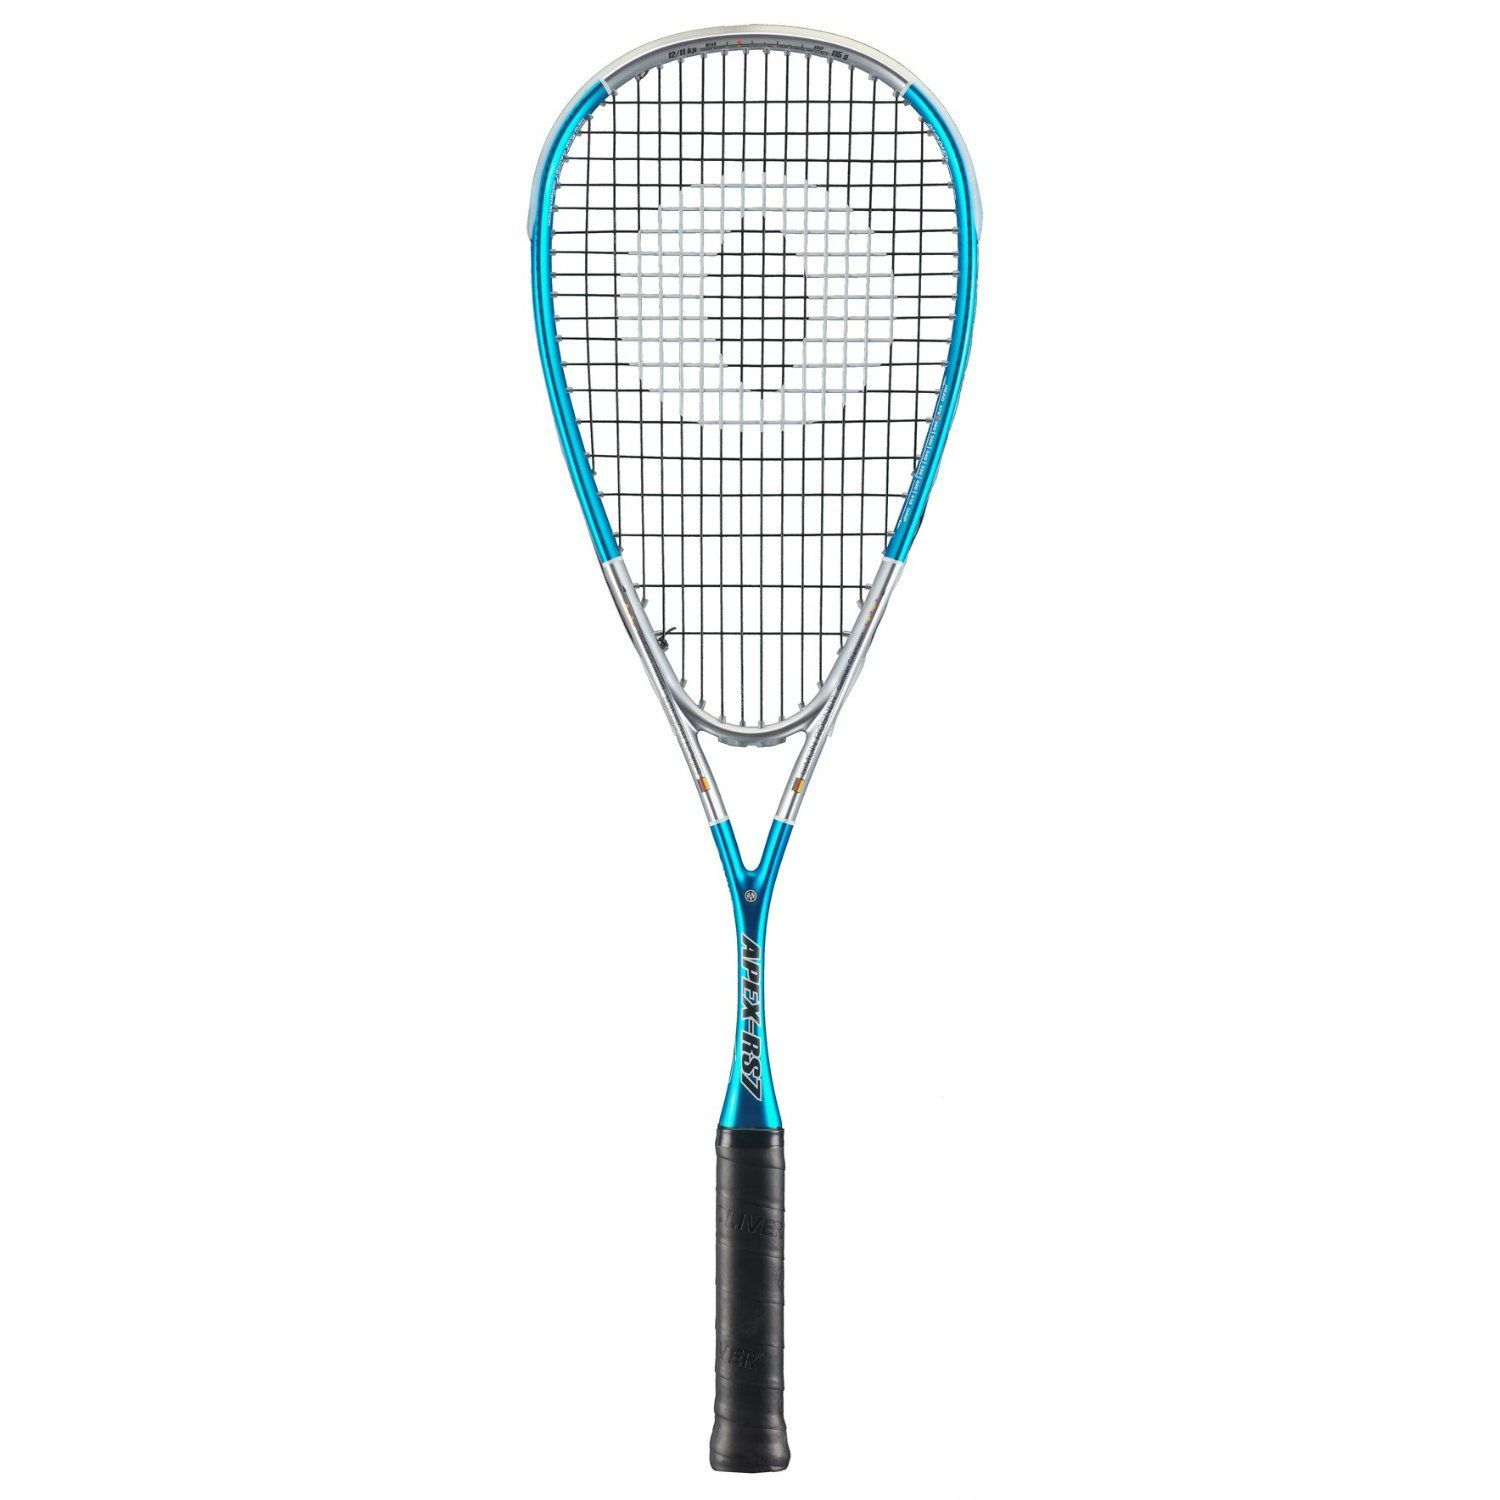 Oliver Apex 7 Squash Racket